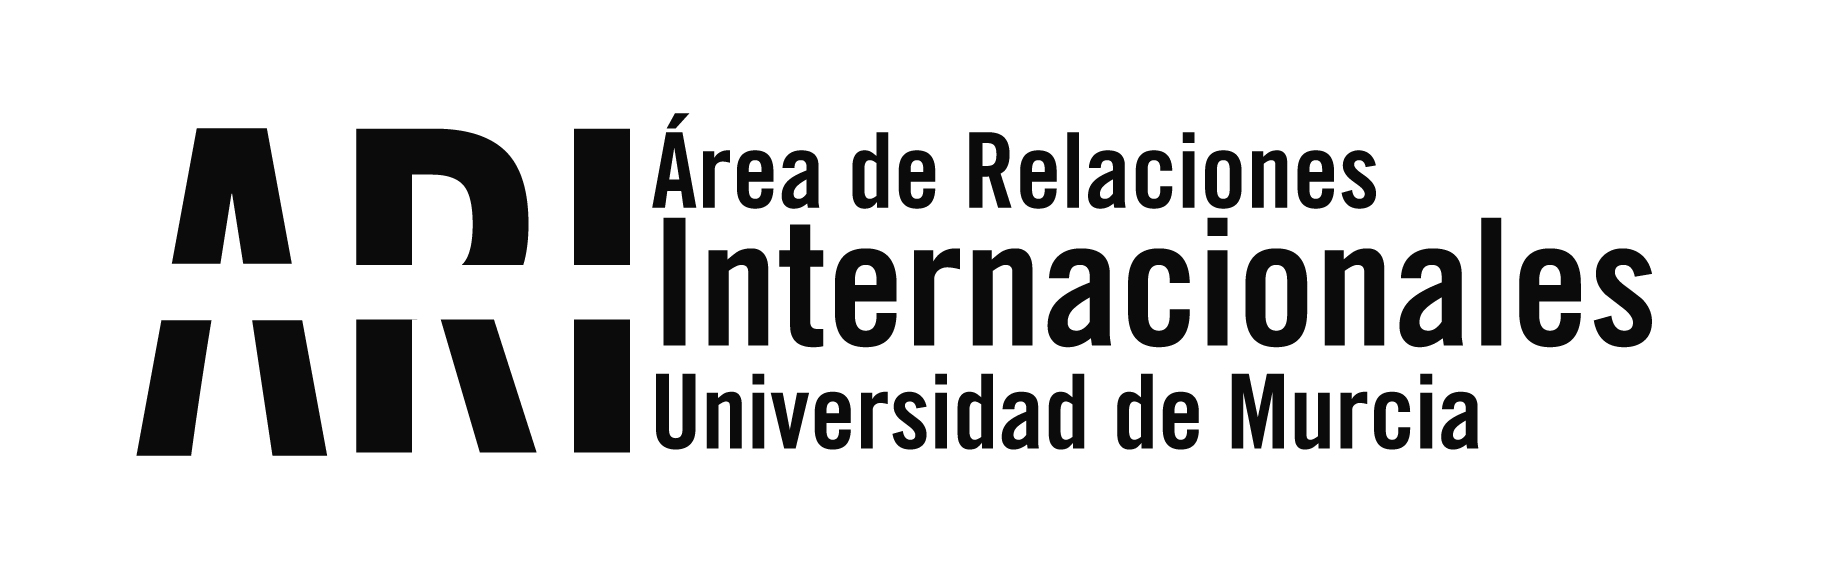 Welcome Week for International Students - BUMI - Área de Relaciones Internacionales